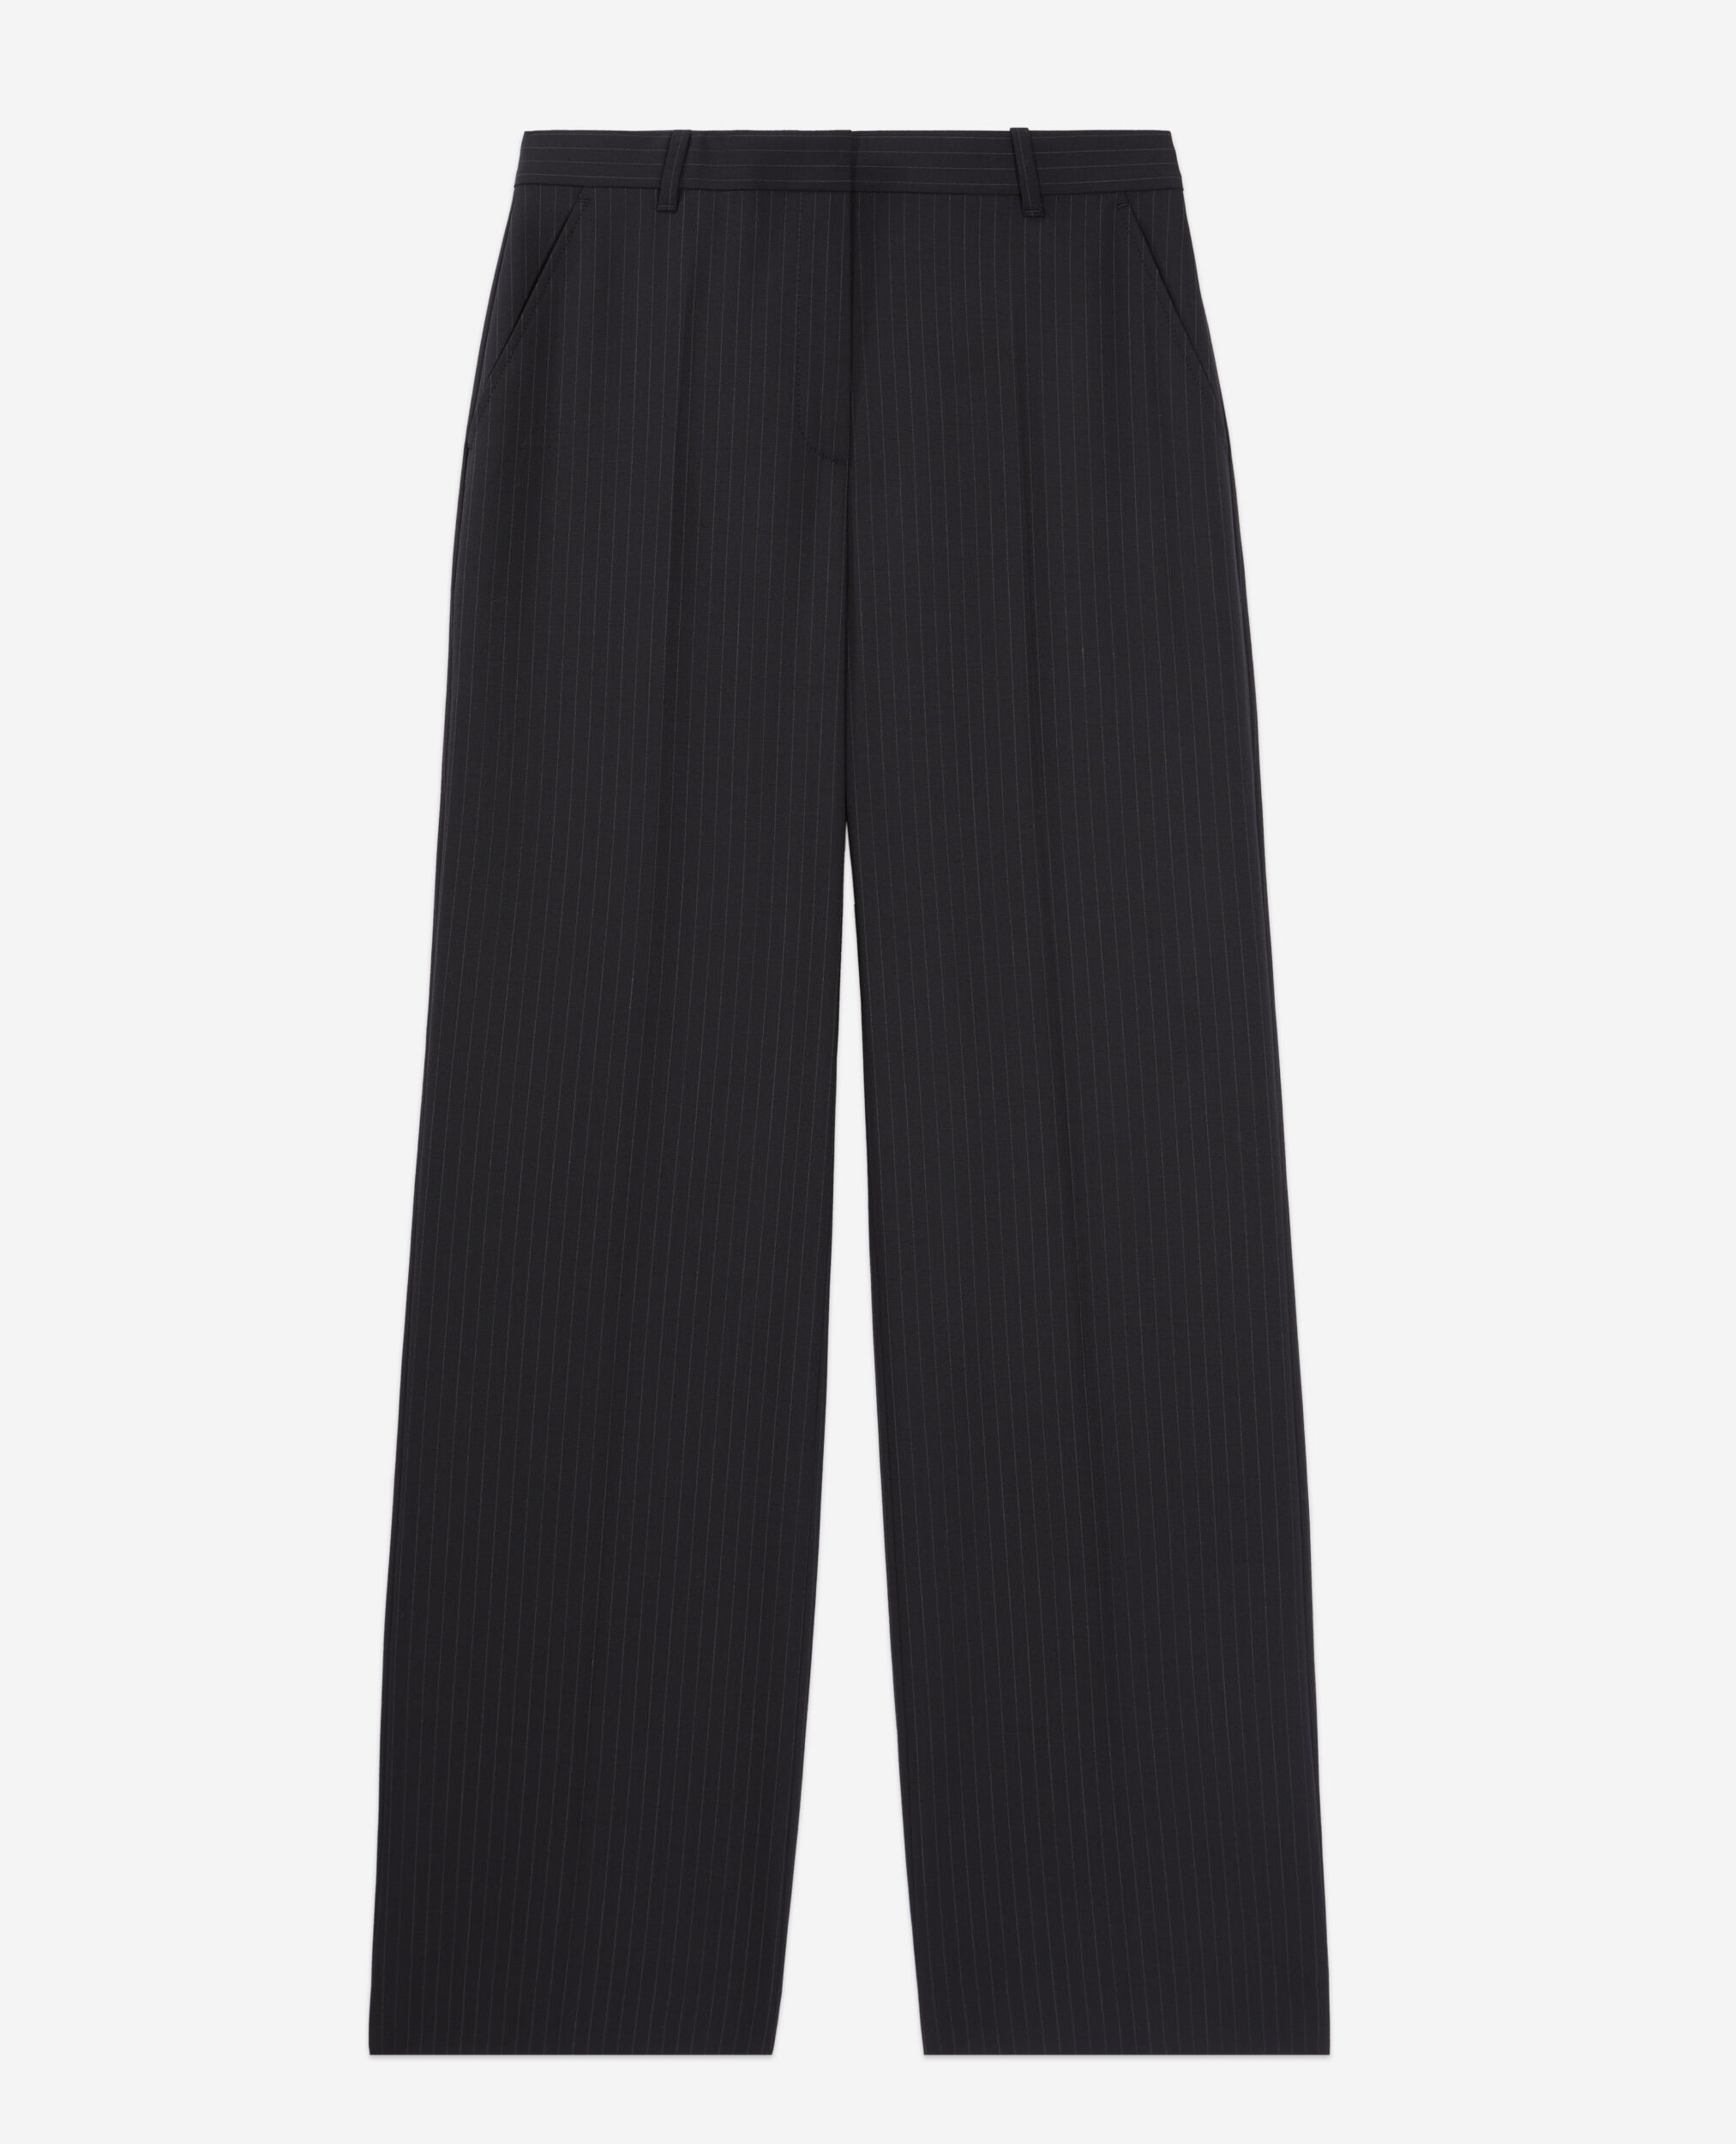 Pantalon tailleur noir à rayures en laine mélangée, BLACK WHITE, hi-res image number null